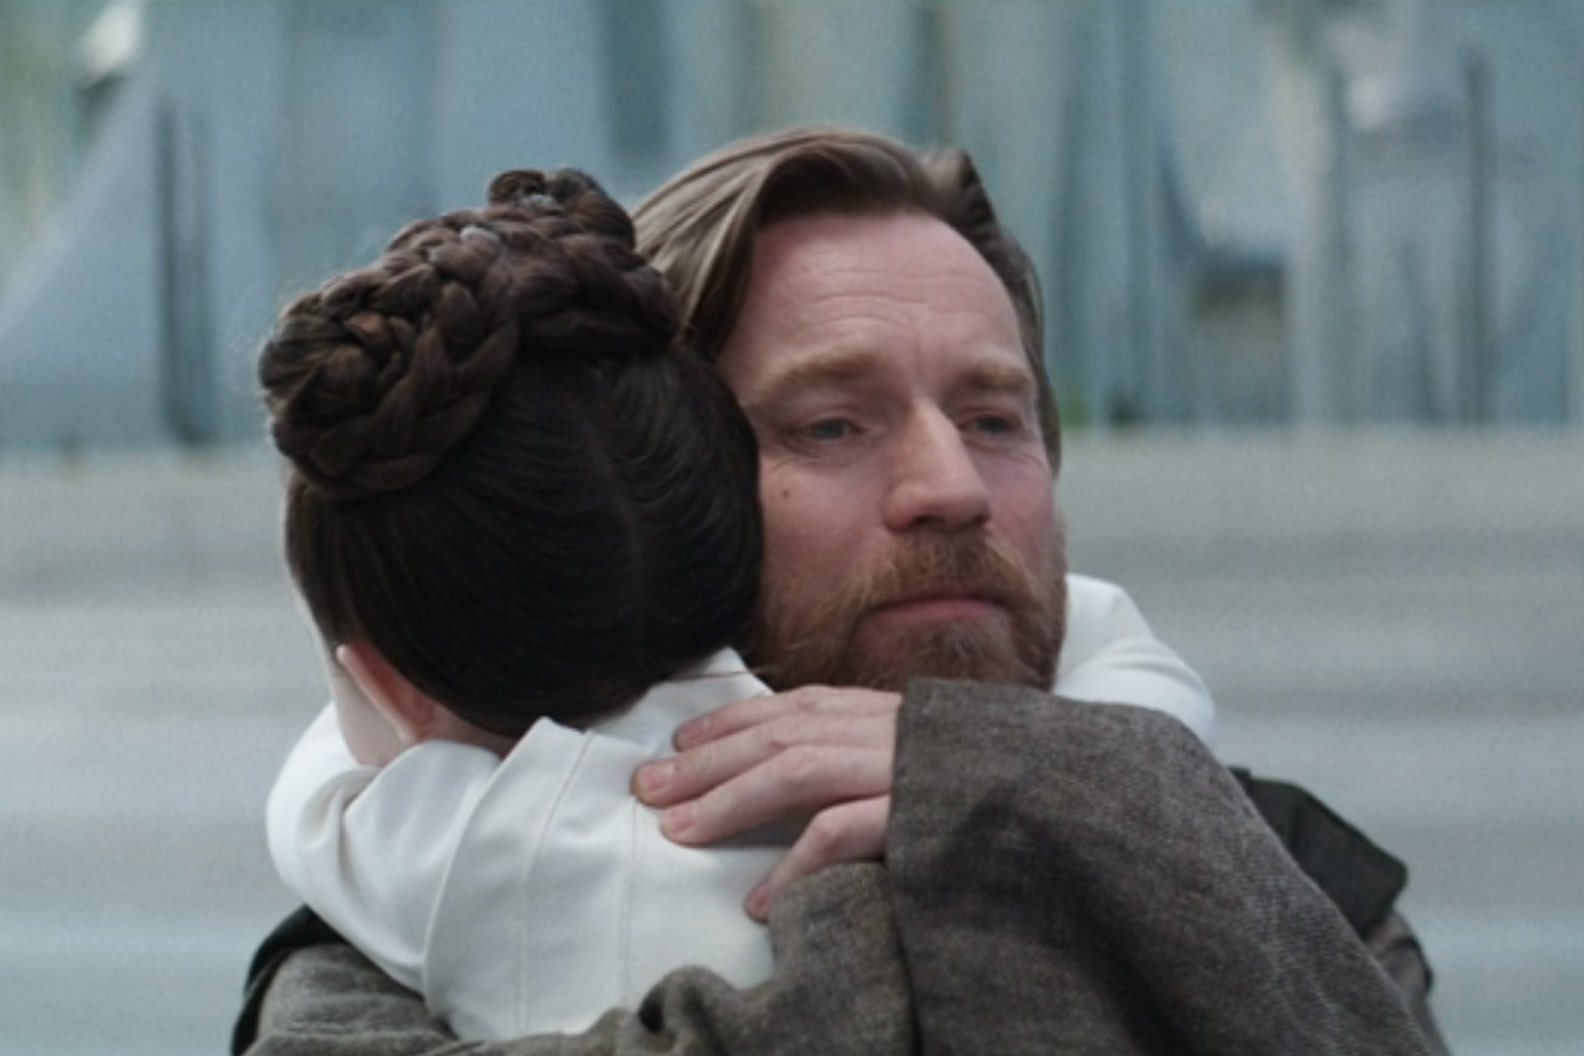 Obi-Wan and Leia say goodbye